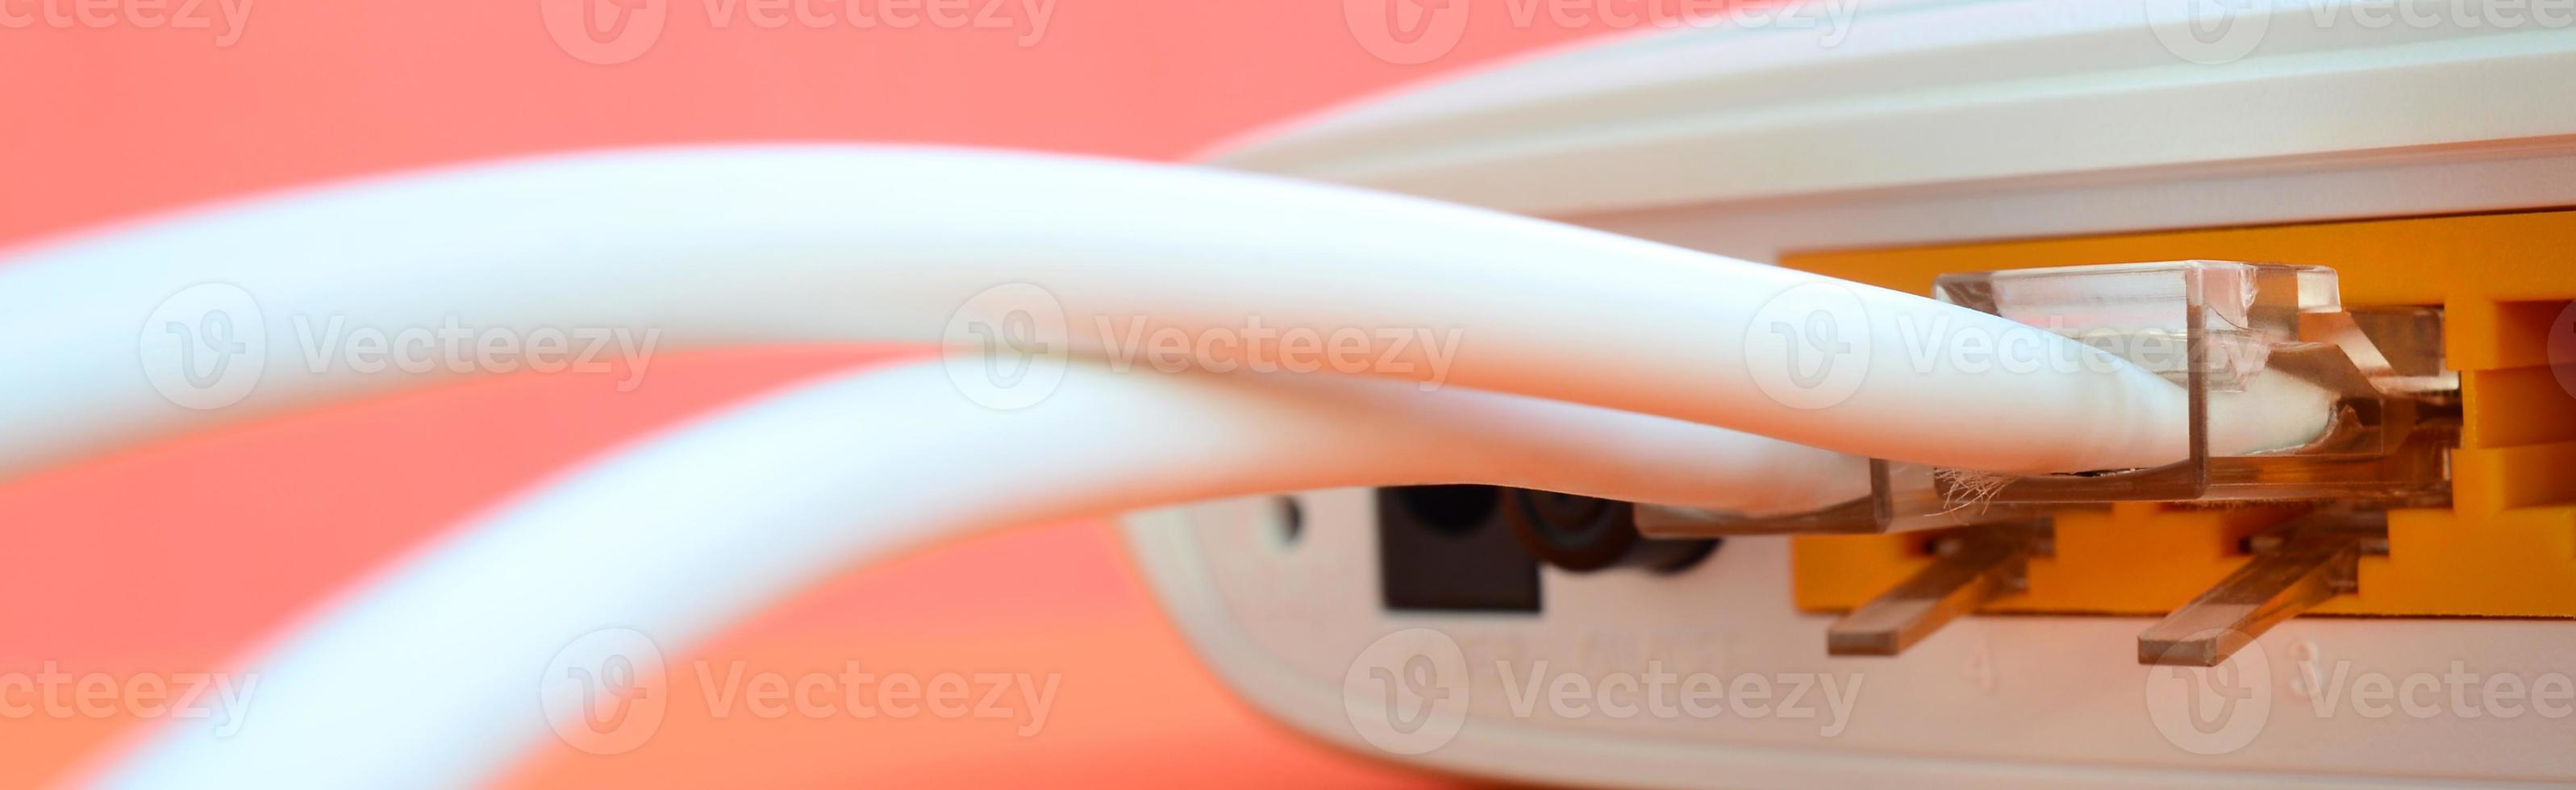 Die Internetkabelstecker sind mit dem Internetrouter verbunden, der auf einem leuchtend orangefarbenen Hintergrund liegt. Elemente, die für die Internetverbindung erforderlich sind foto